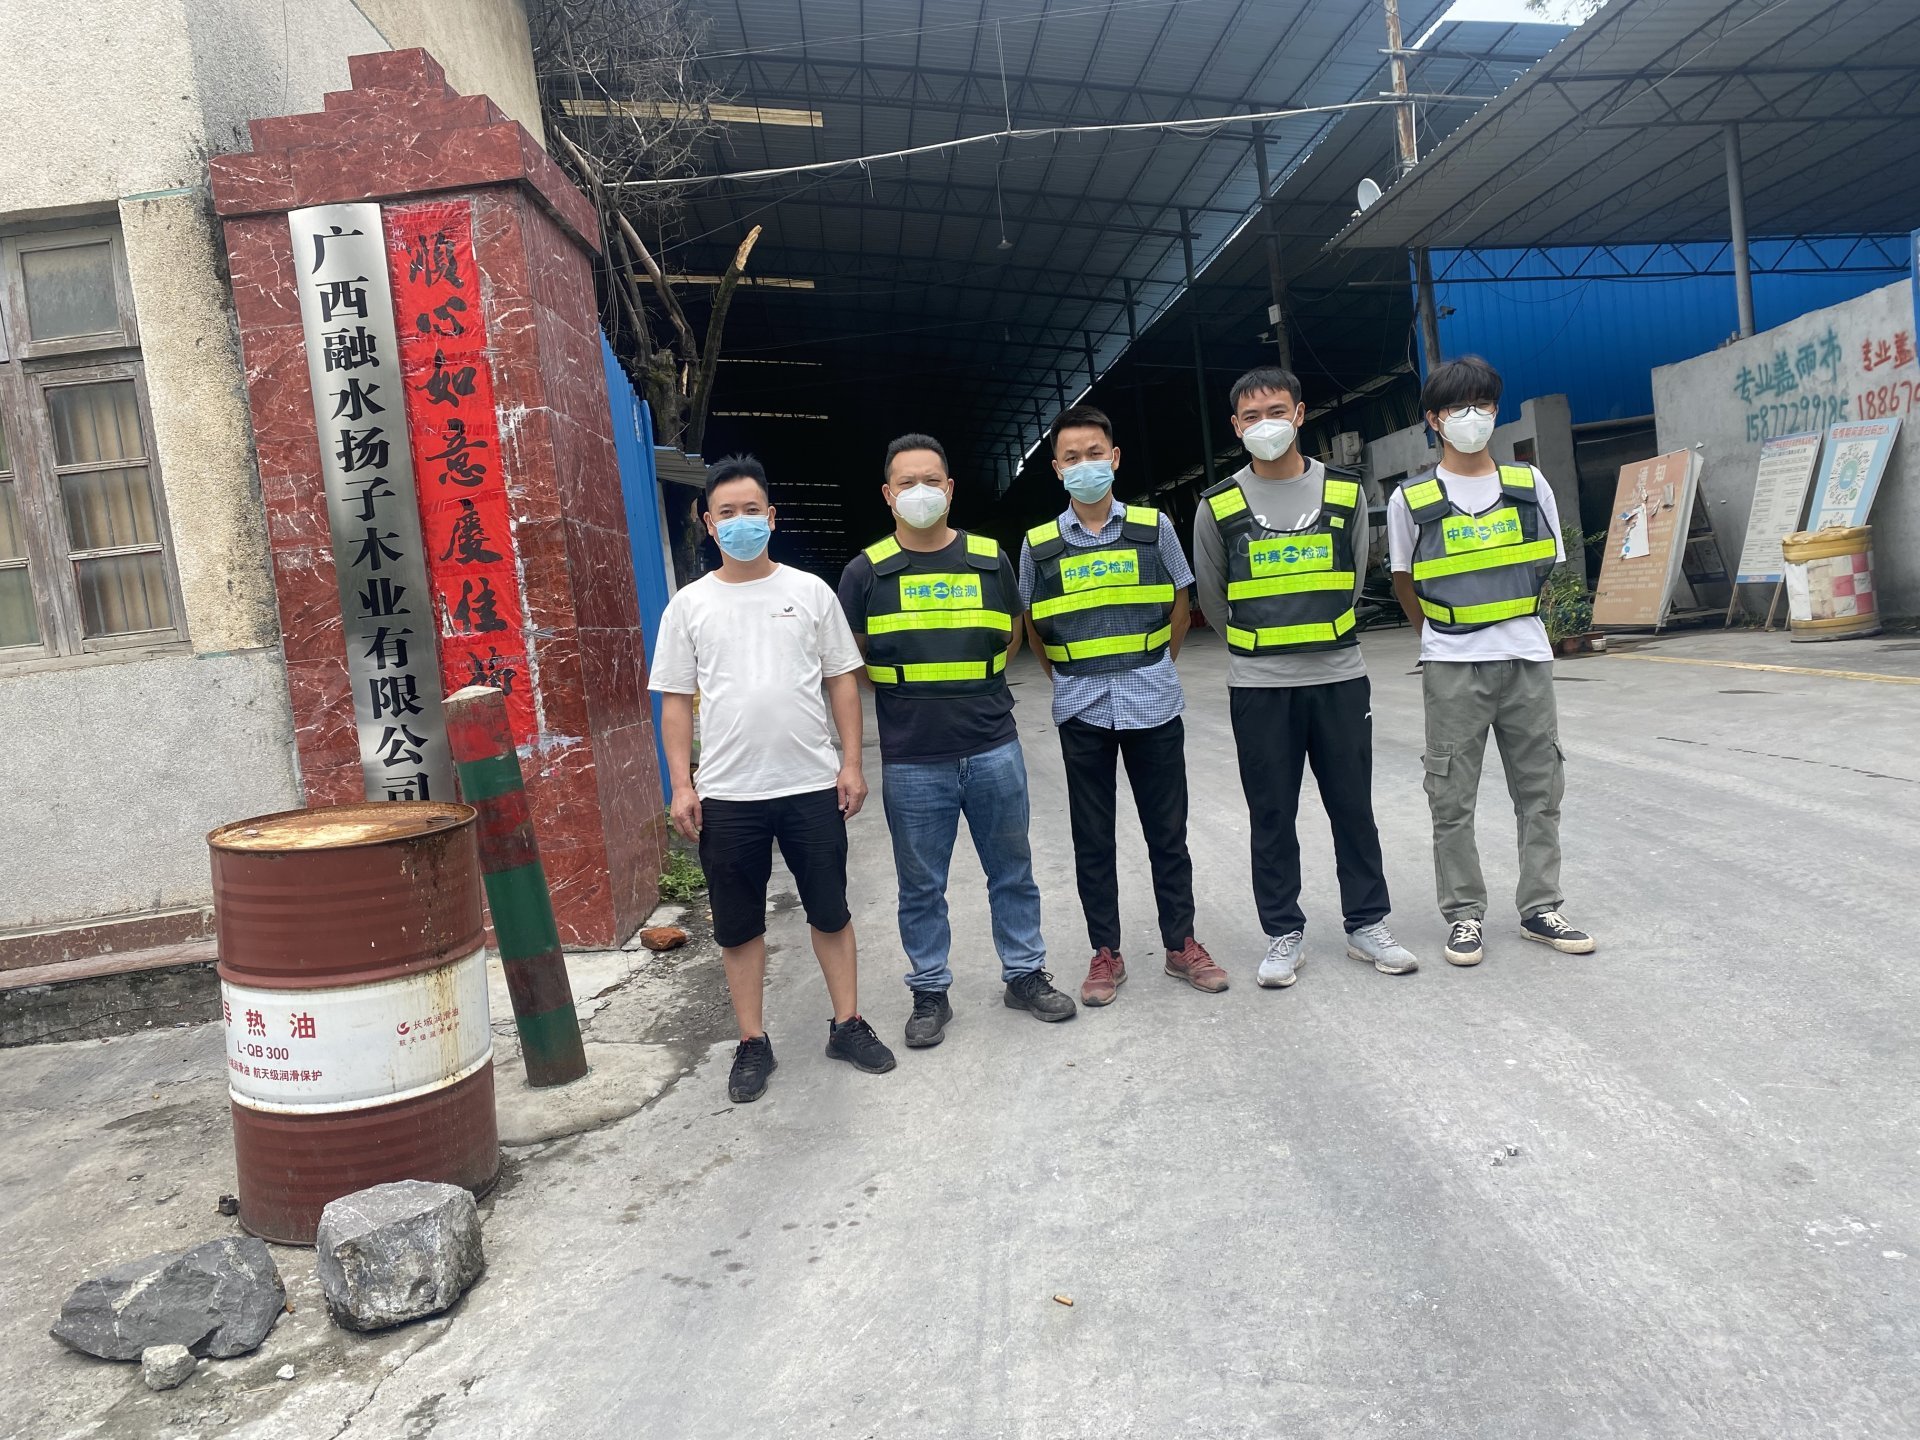 广西融水扬子木业有限公司 工作场所职业病危害因素定期检测报告公示